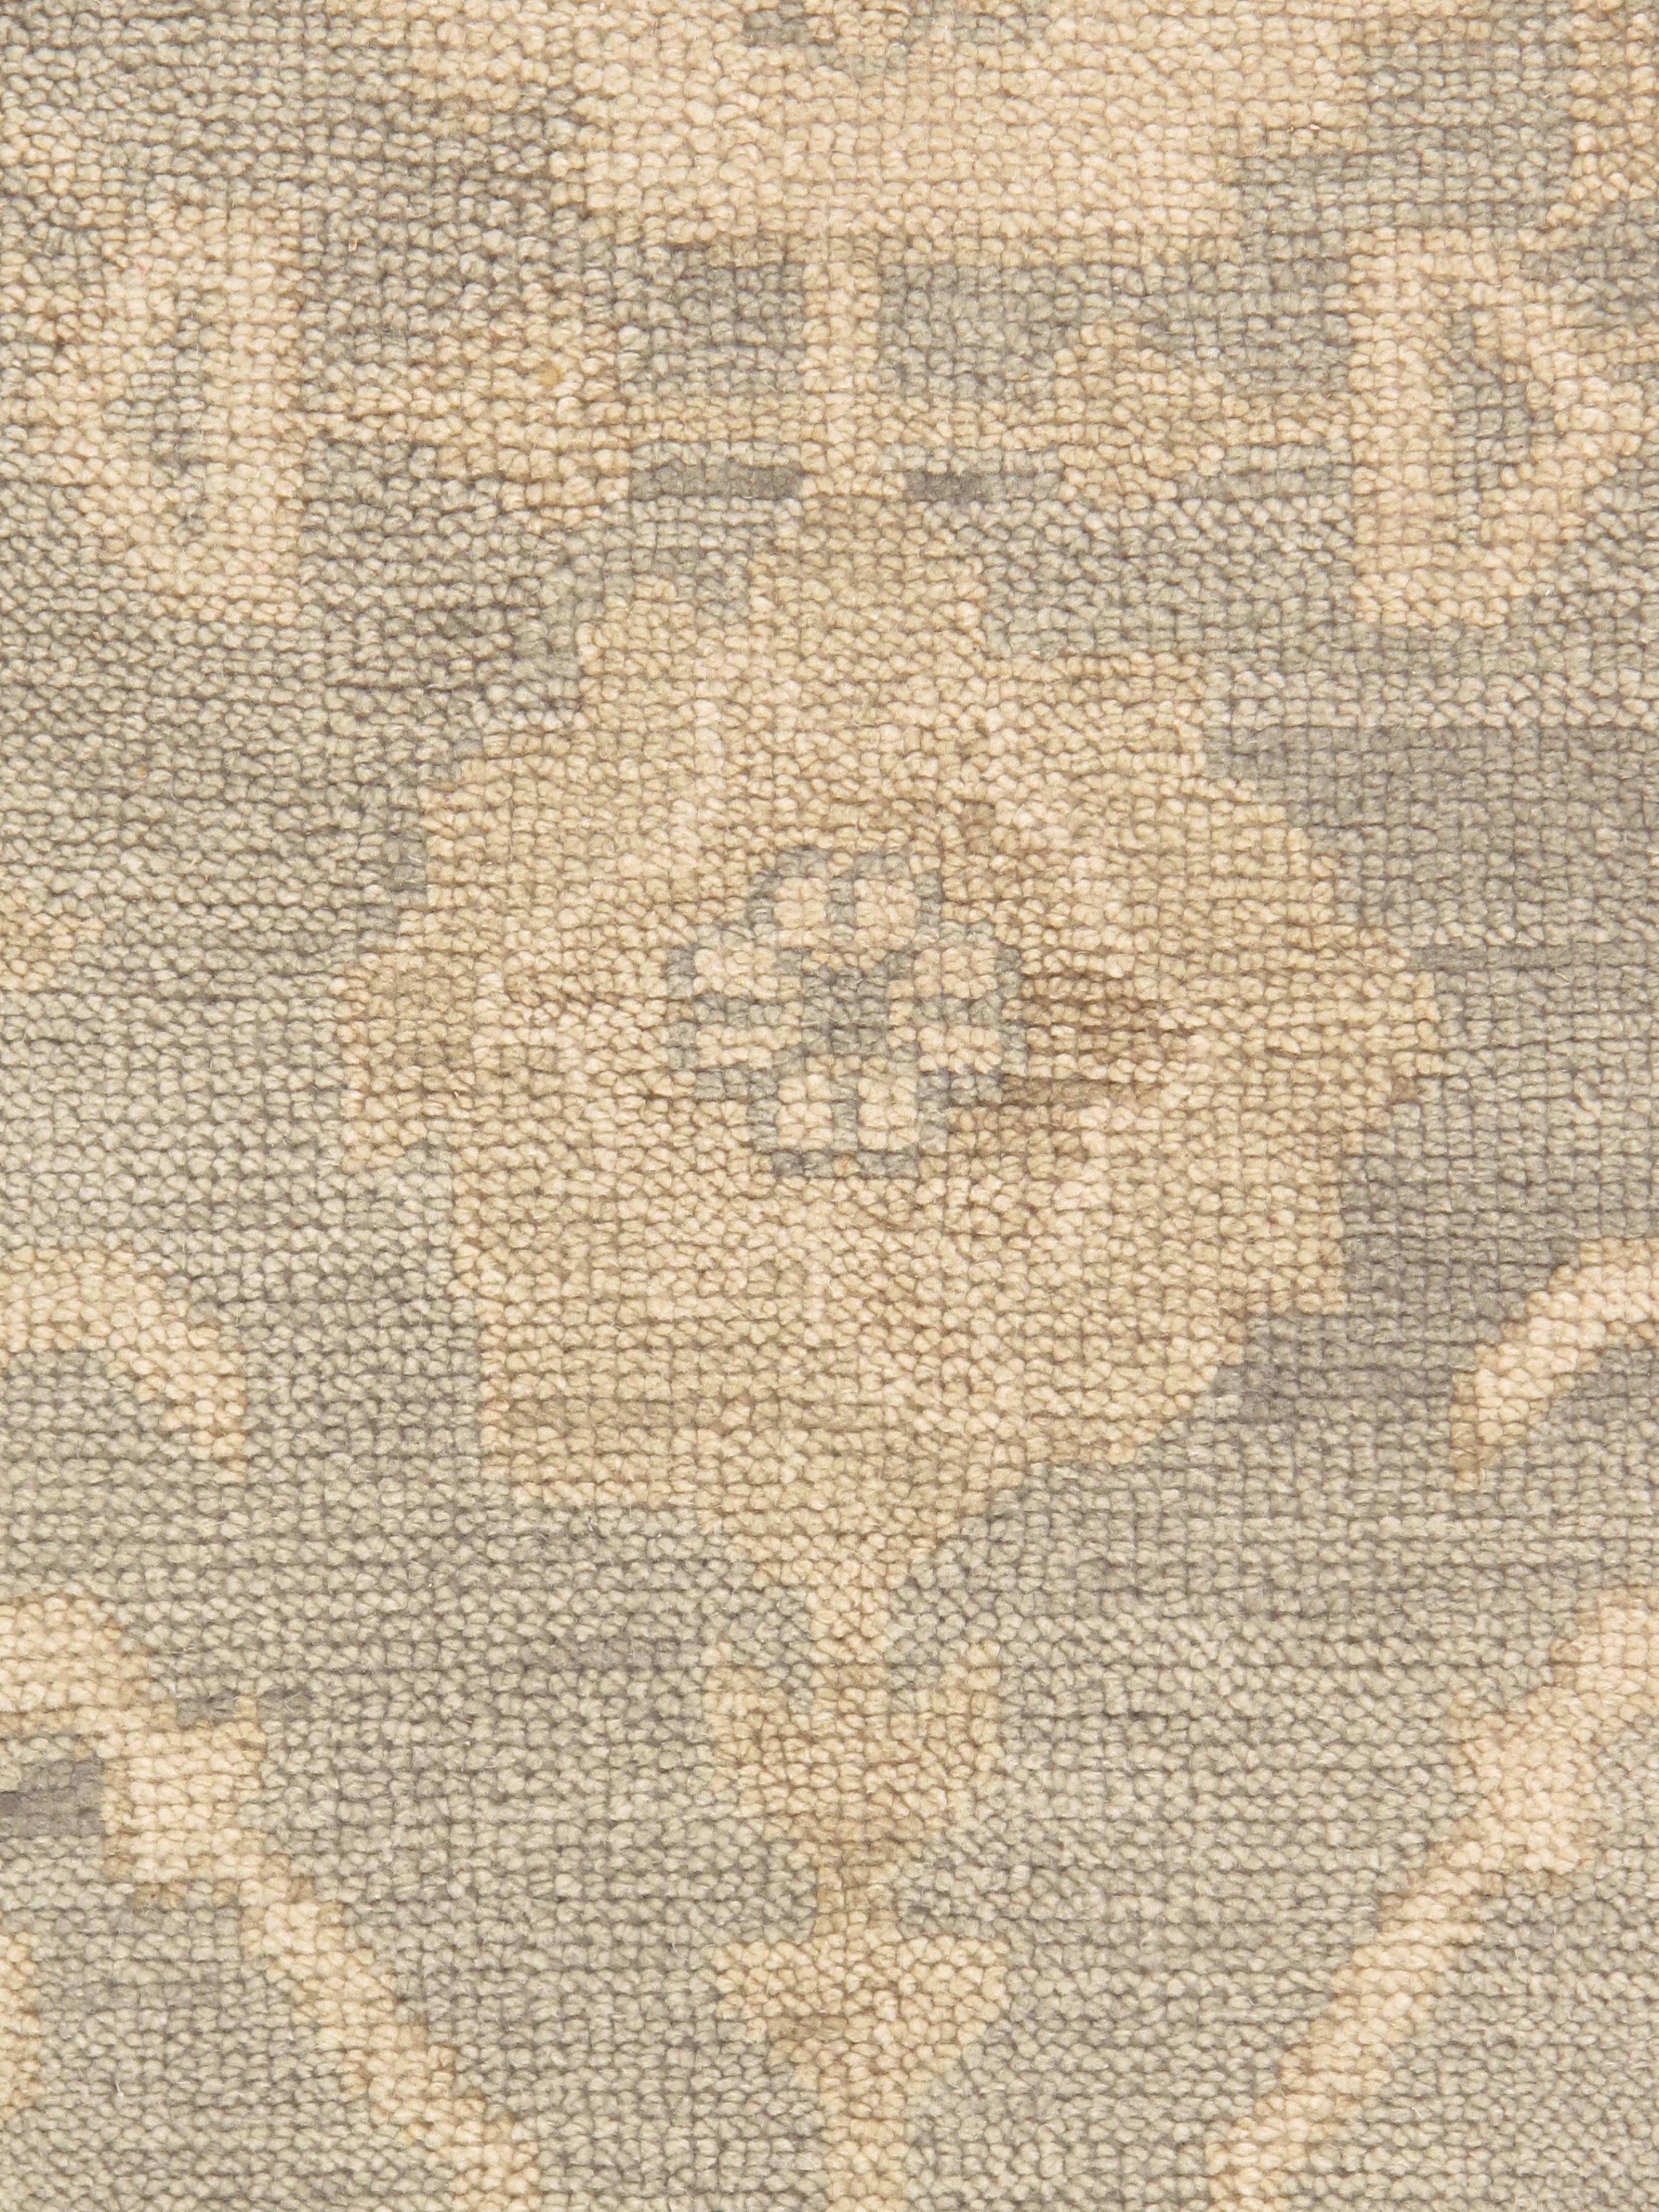 Les tapis Oushak, également connus sous le nom de tapis Ushak ou Usak, sont réputés pour leur beauté intemporelle, leur riche histoire et leur artisanat exceptionnel. Originaires de la région d'Oushak, dans l'ouest de la Turquie, ces tapis sont